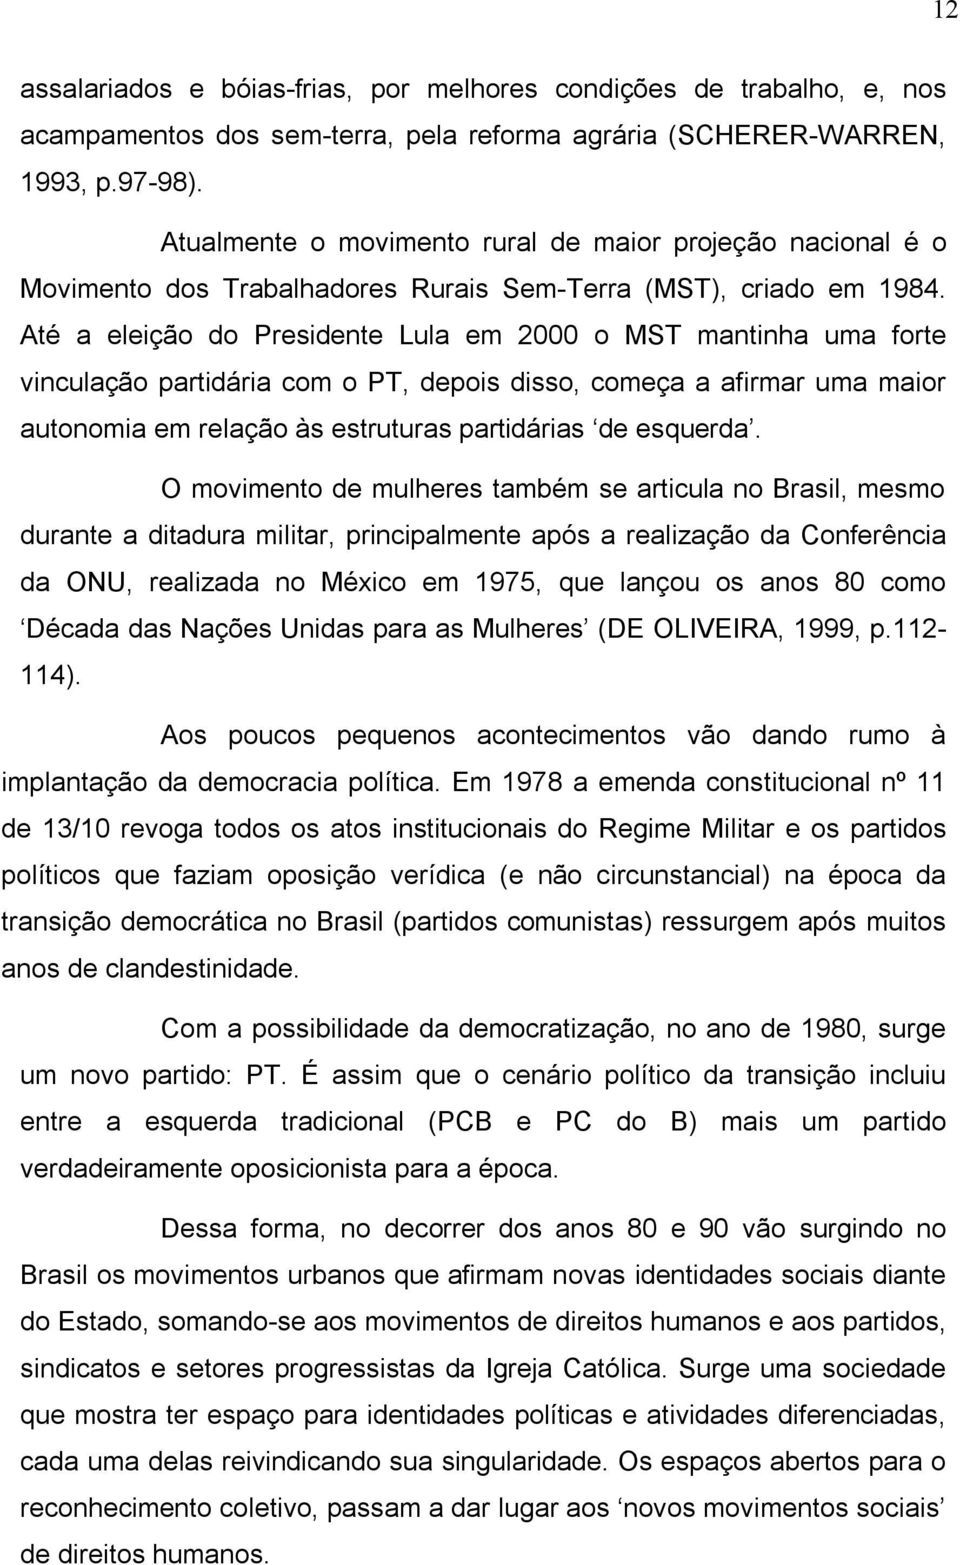 Até a eleição do Presidente Lula em 2000 o MST mantinha uma forte vinculação partidária com o PT, depois disso, começa a afirmar uma maior autonomia em relação às estruturas partidárias de esquerda.